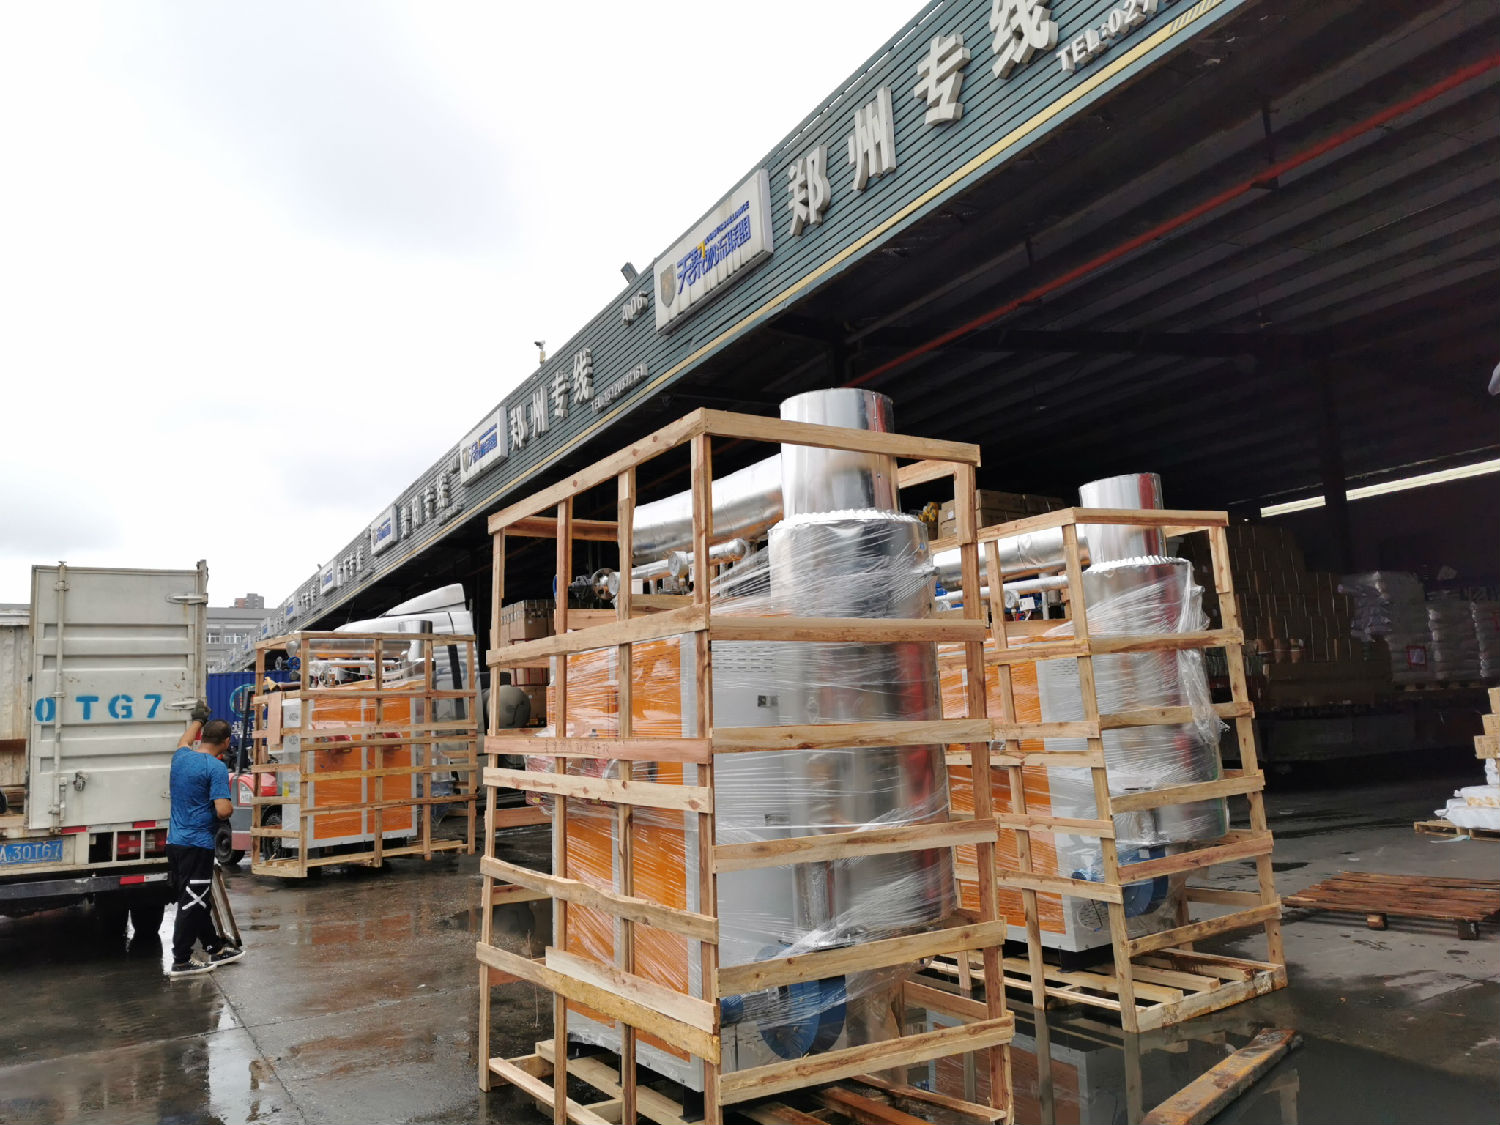 载着郑州调味品加工不锈钢蒸汽发生器的货车已经到达物流点准备发往郑州